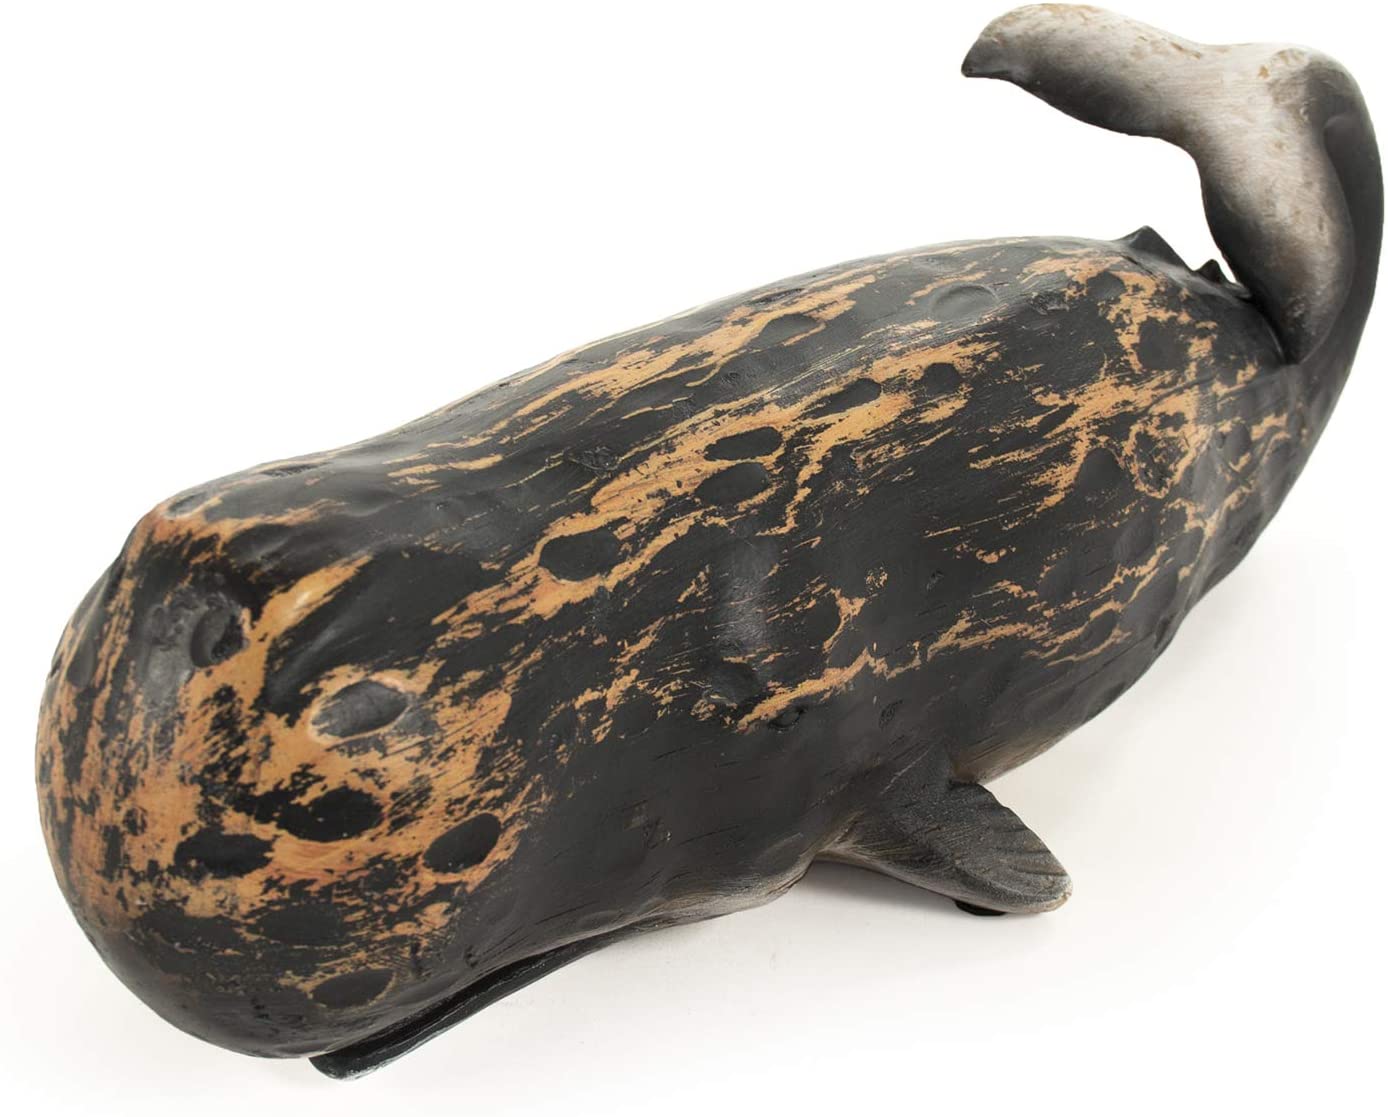 Shi049 6 X 6.25 X 18.25 In. Whale Sculpture, Distressed Black - Medium